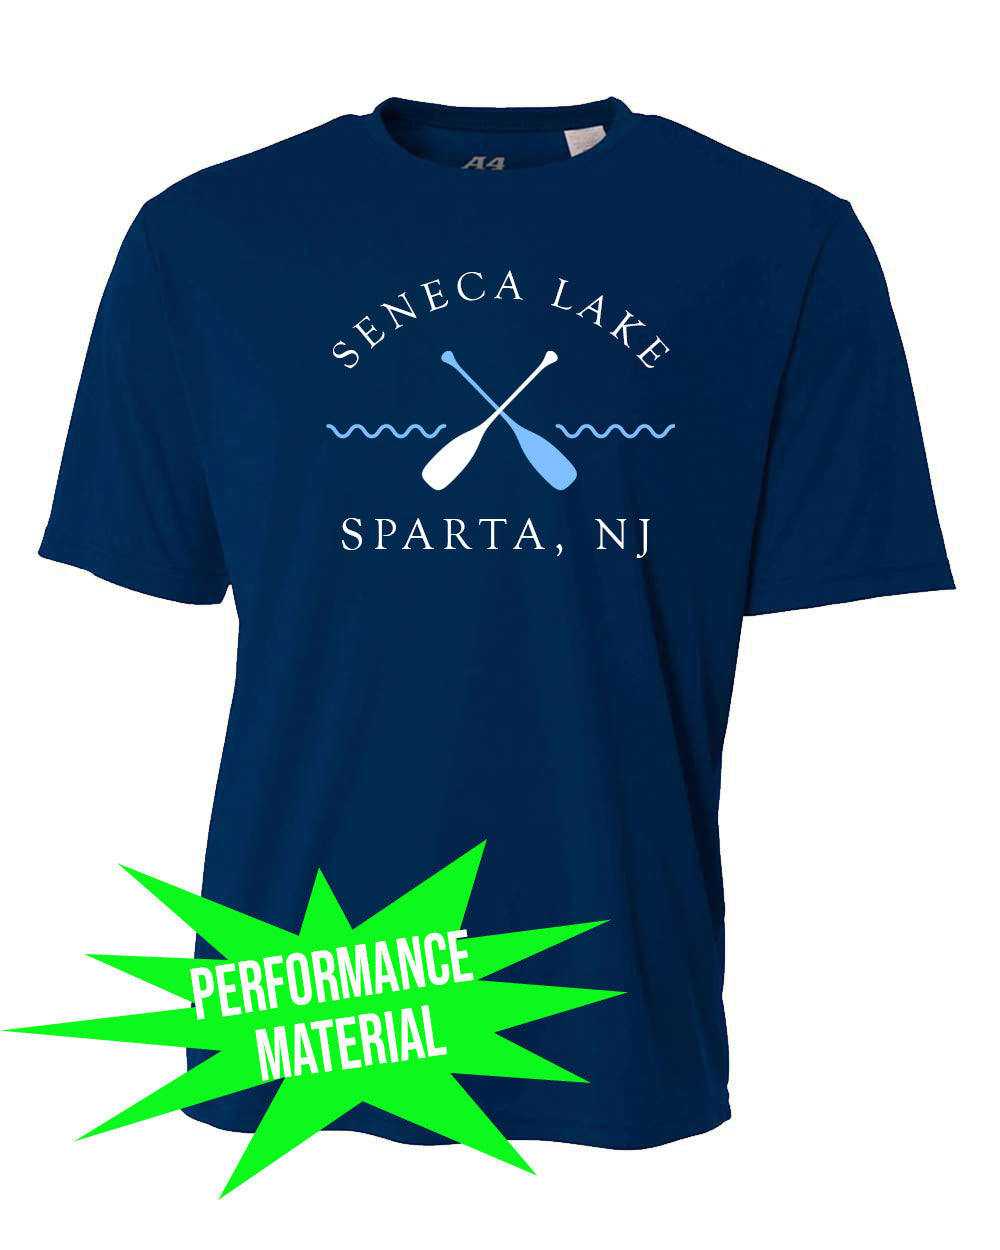 Seneca Lake Performance Material design 5 T-Shirt